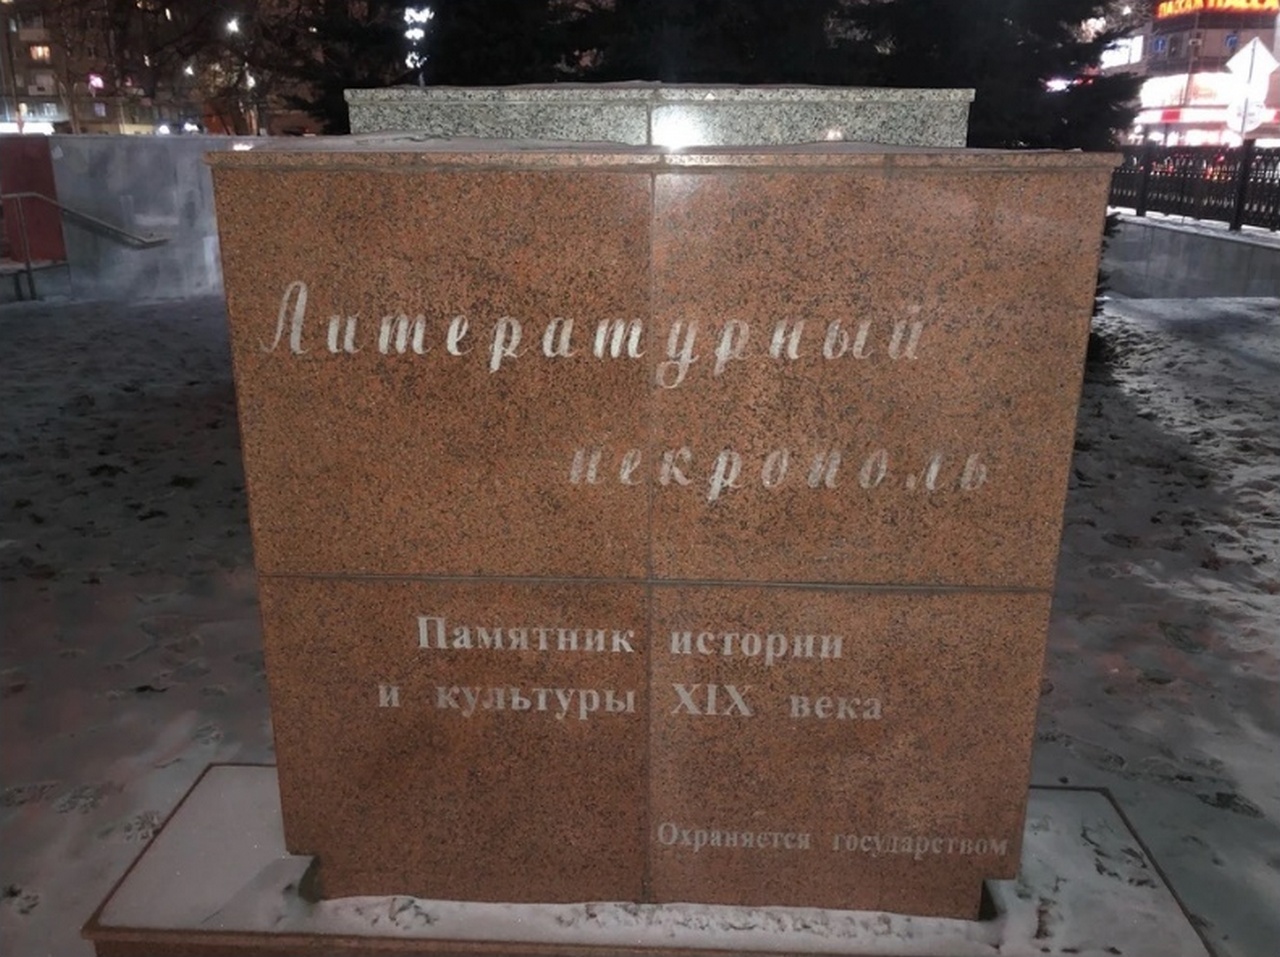 Реставрацию Литературного некрополя после акта вандализма проведут в Воронеже